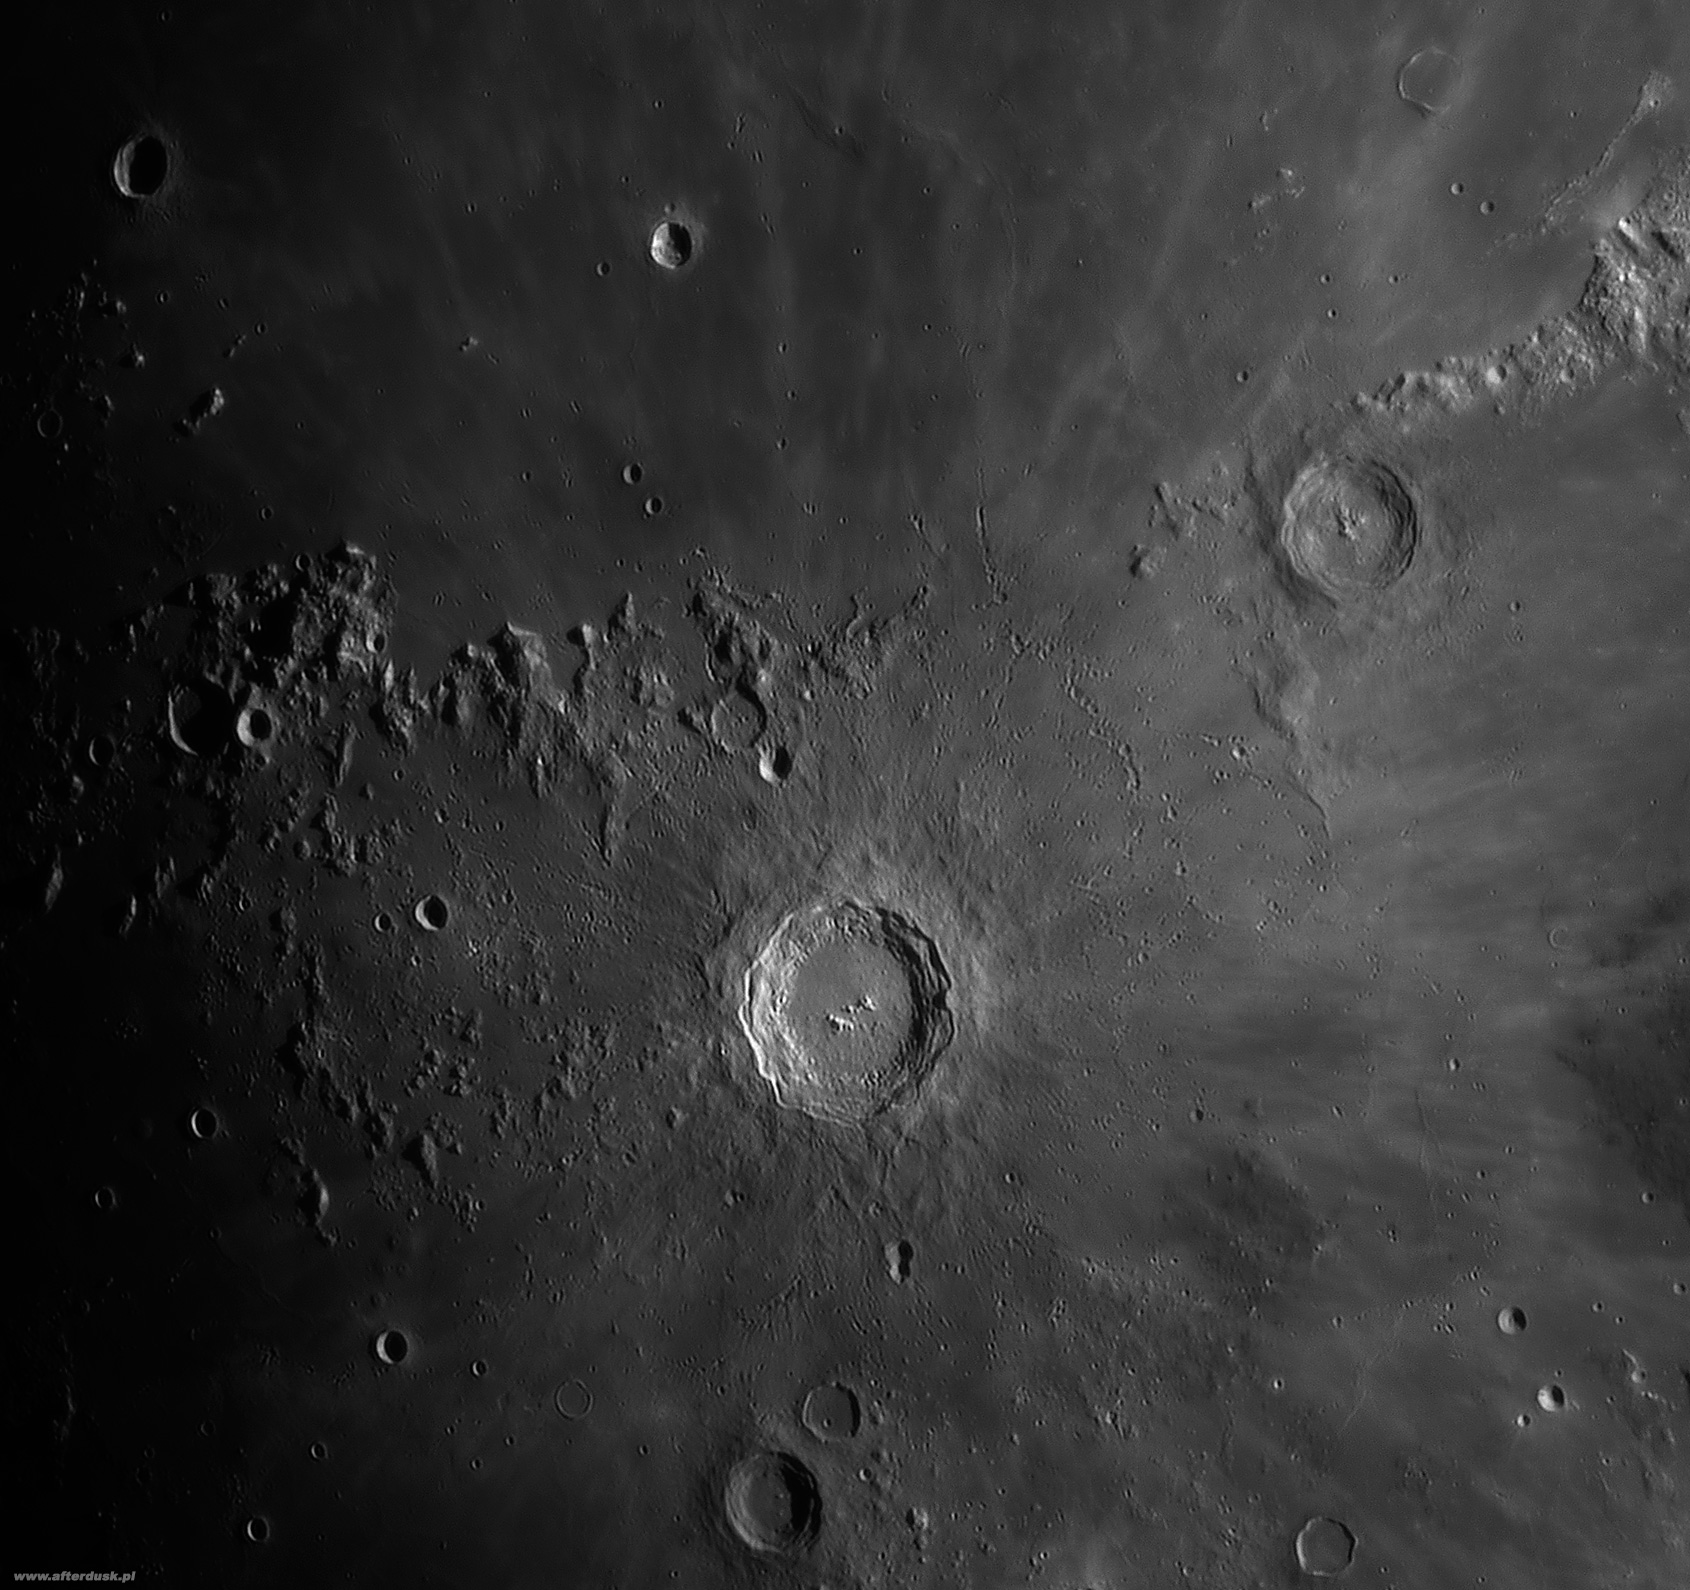 Copernicus-Eratosthenes-Reinhold